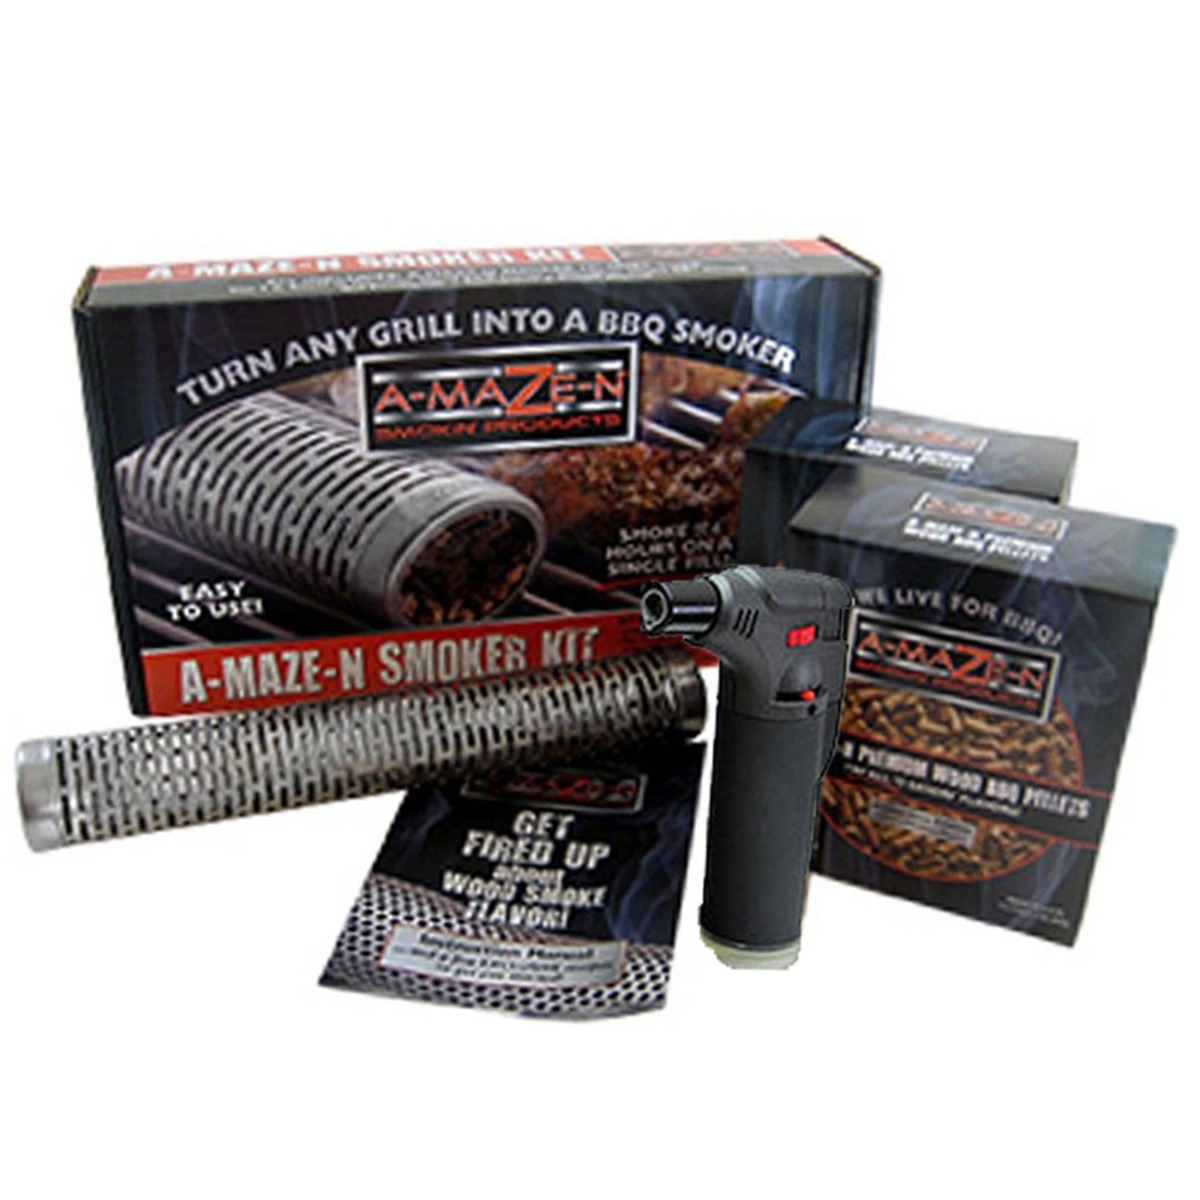  Oval Smoker Kit 4pcs - A-Maze-N®